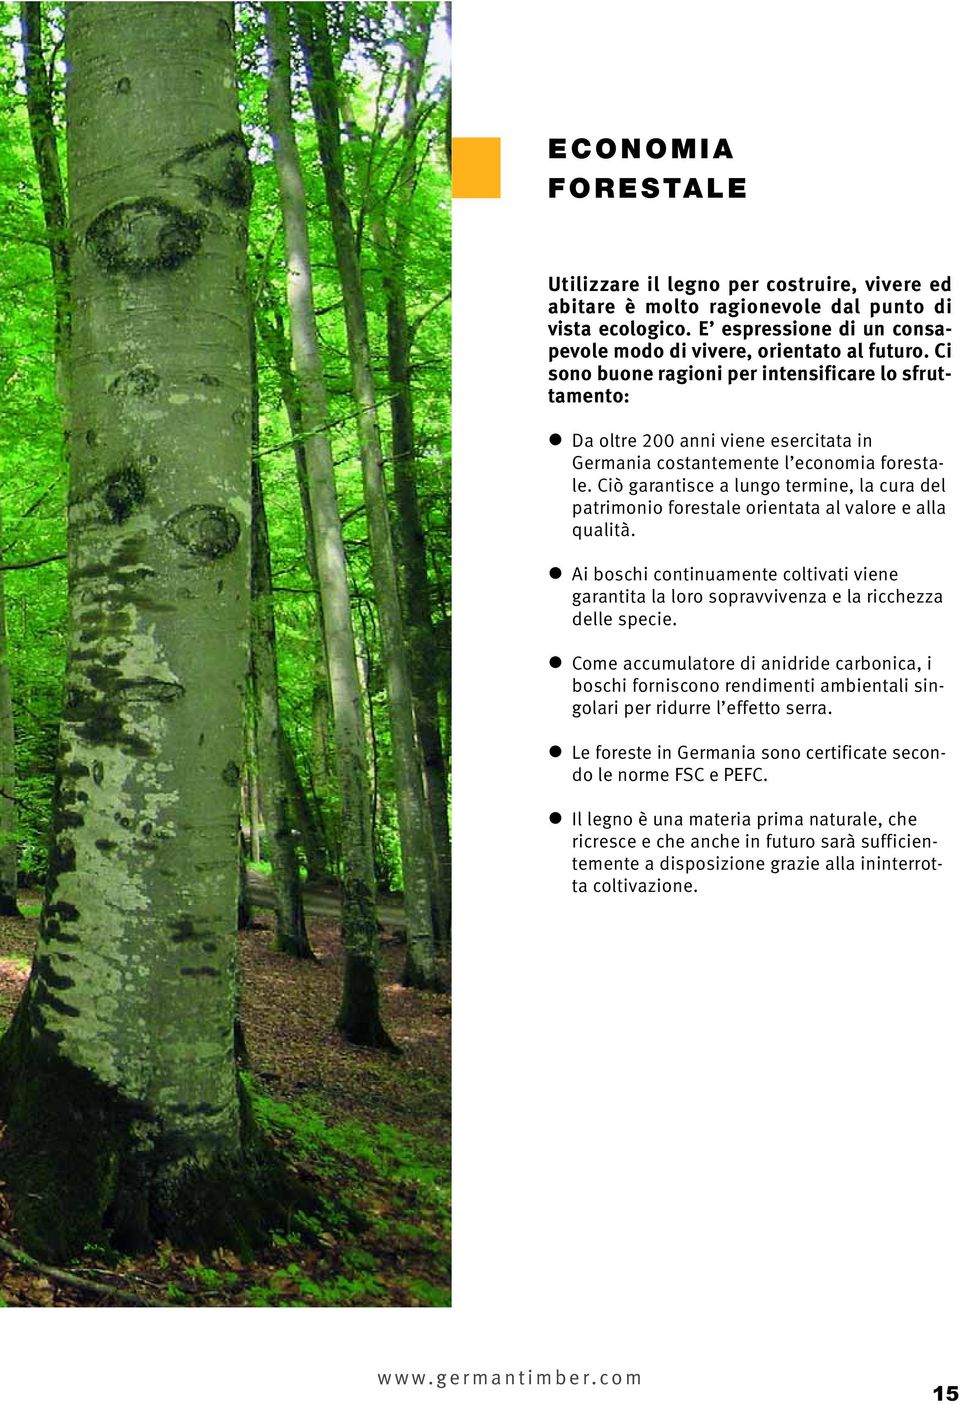 Ciò garantisce a lungo termine, la cura del patrimonio forestale orientata al valore e alla qualità.